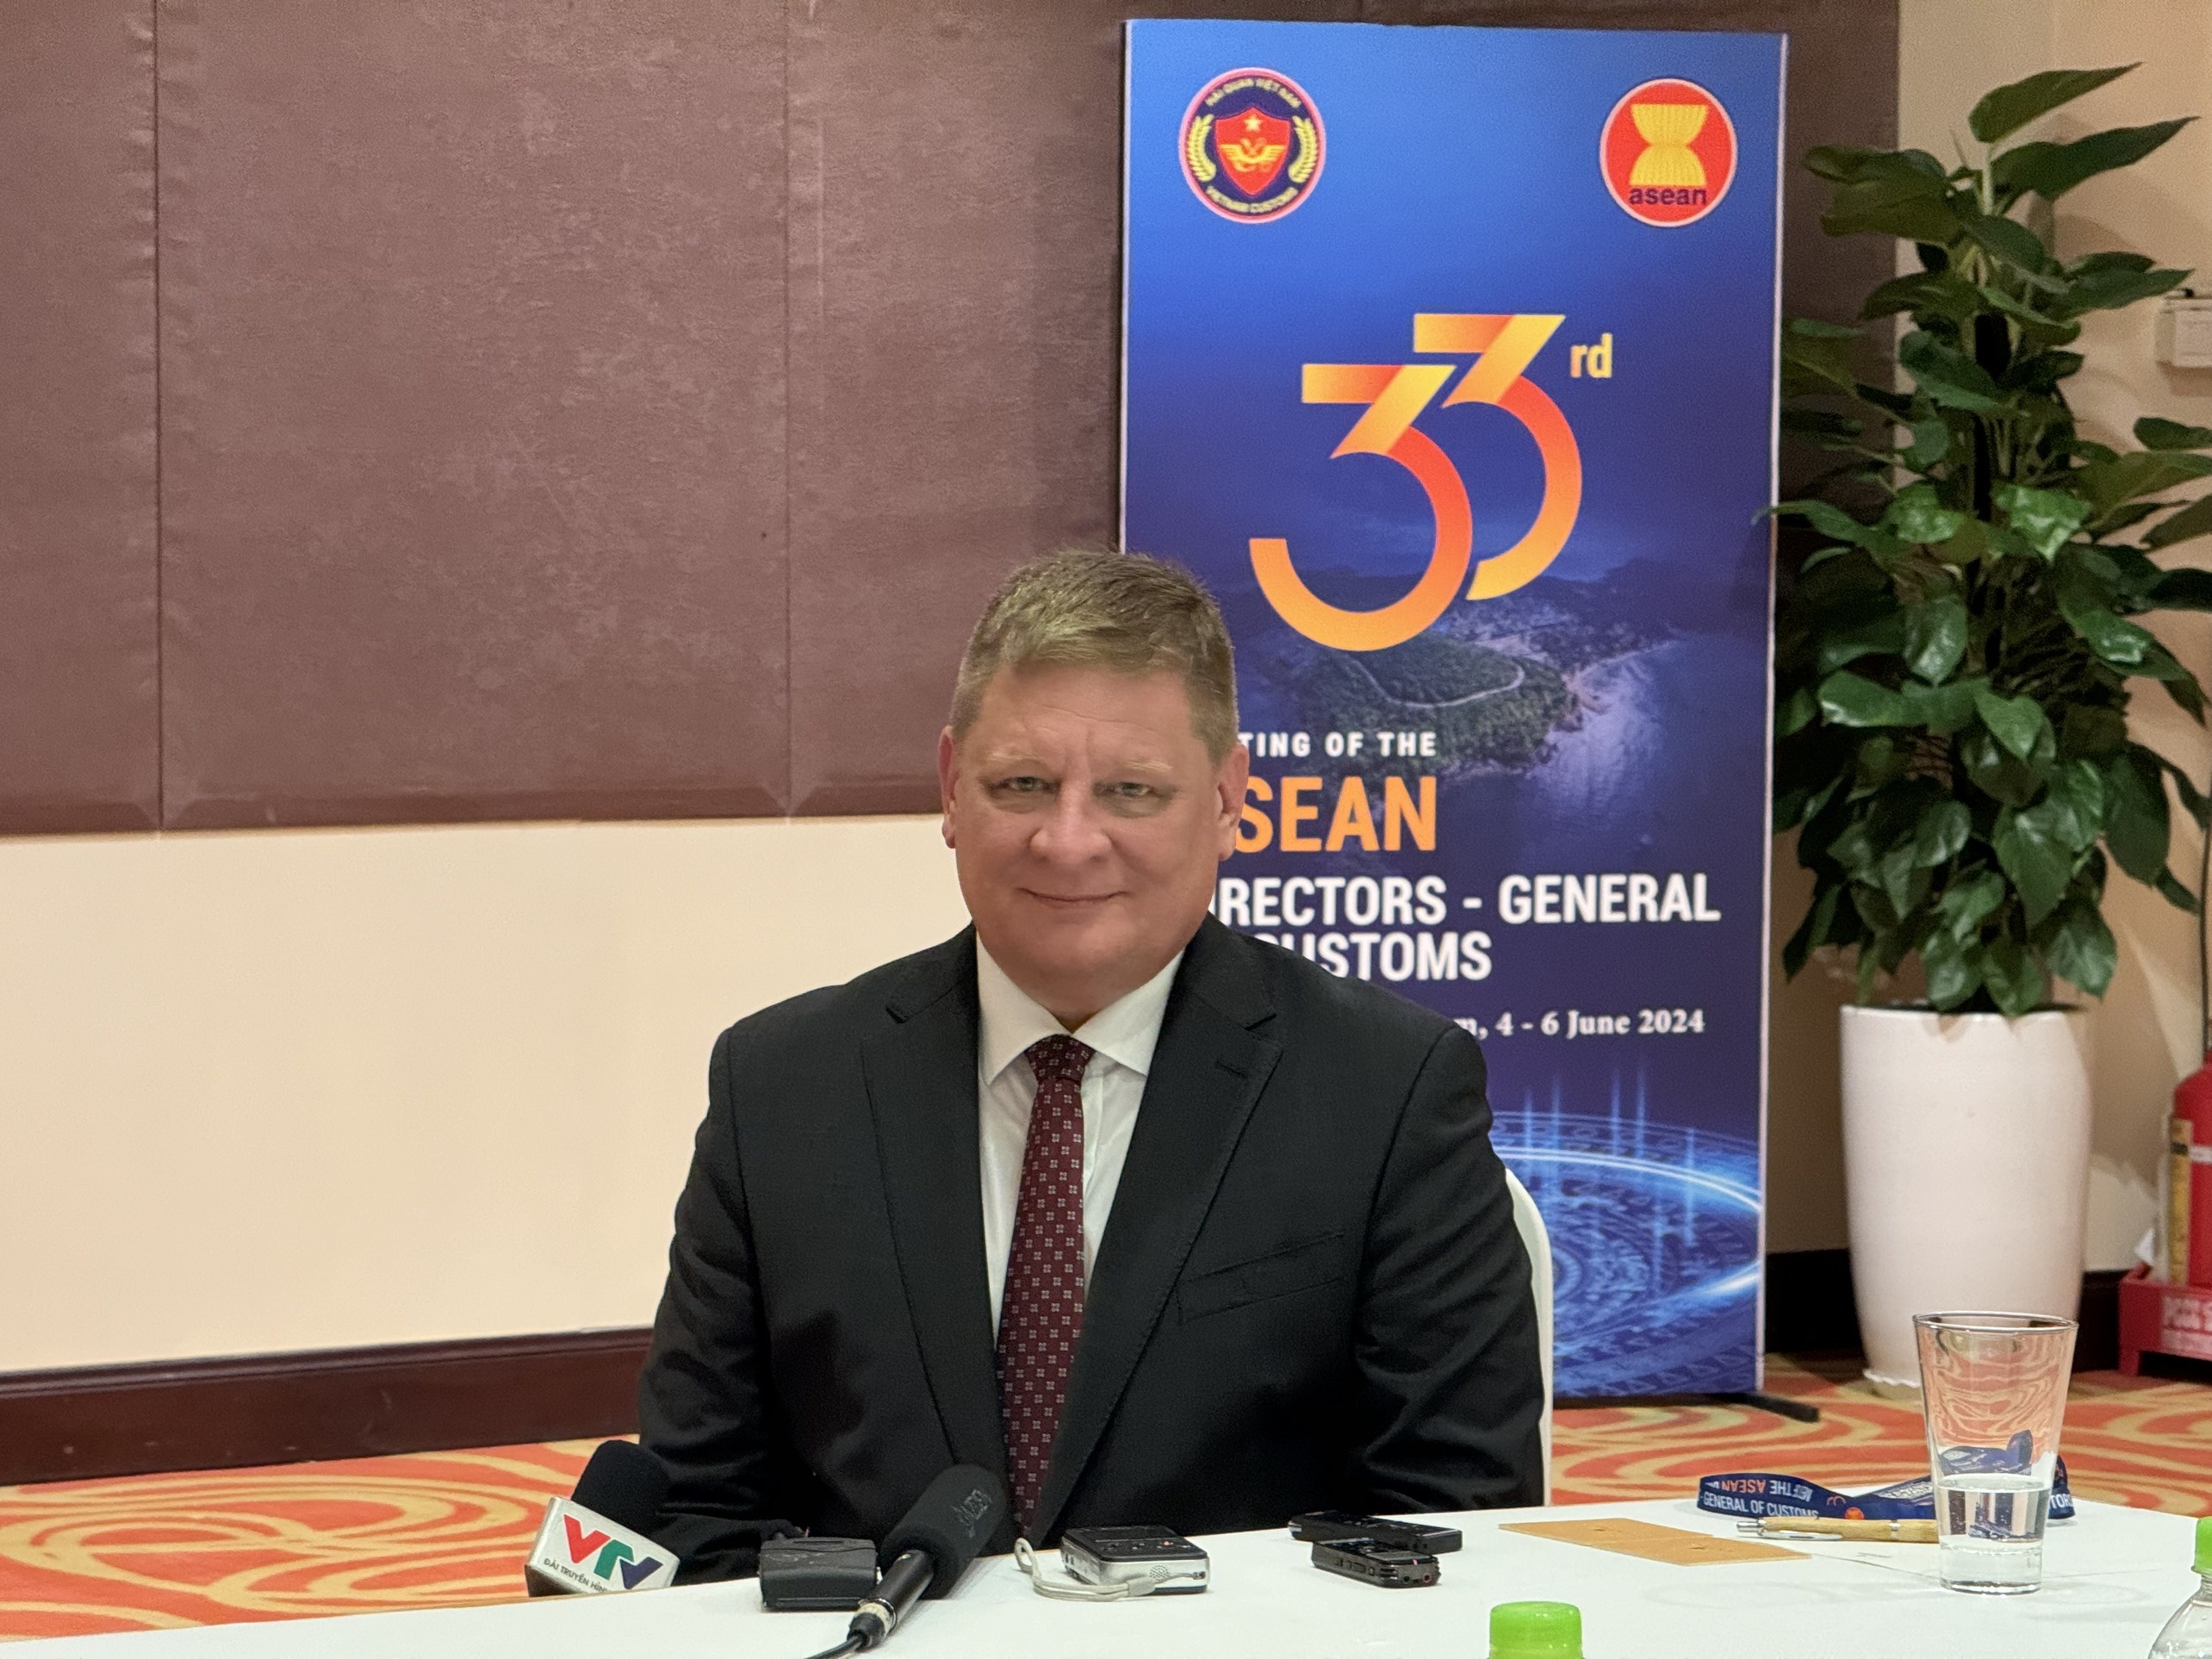 Doanh nghiệp EU sẵn sàng hỗ trợ Hải quan Việt Nam đấu tranh chống thương mại bất hợp pháp